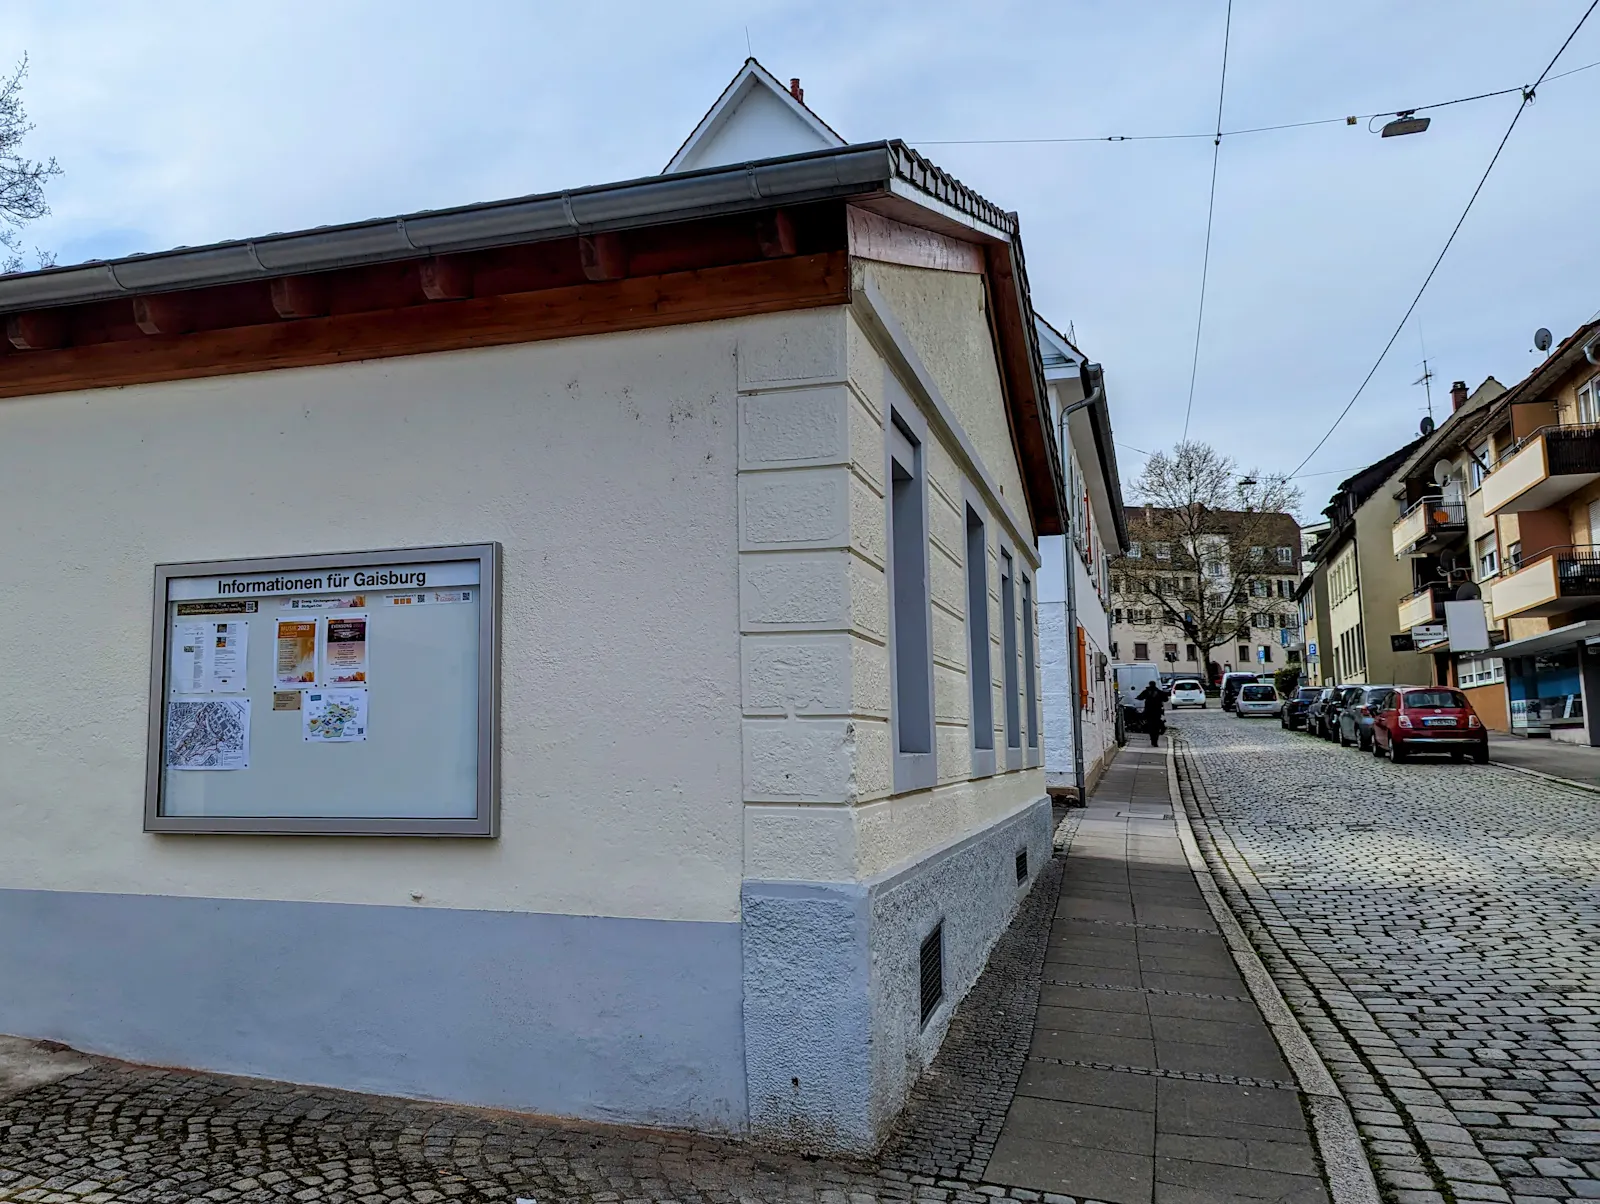 Aus Mitteln des Verfügungsfonds finanzierter Schaukasten an der Hornbergstraße. Foto: Jürgen Brand